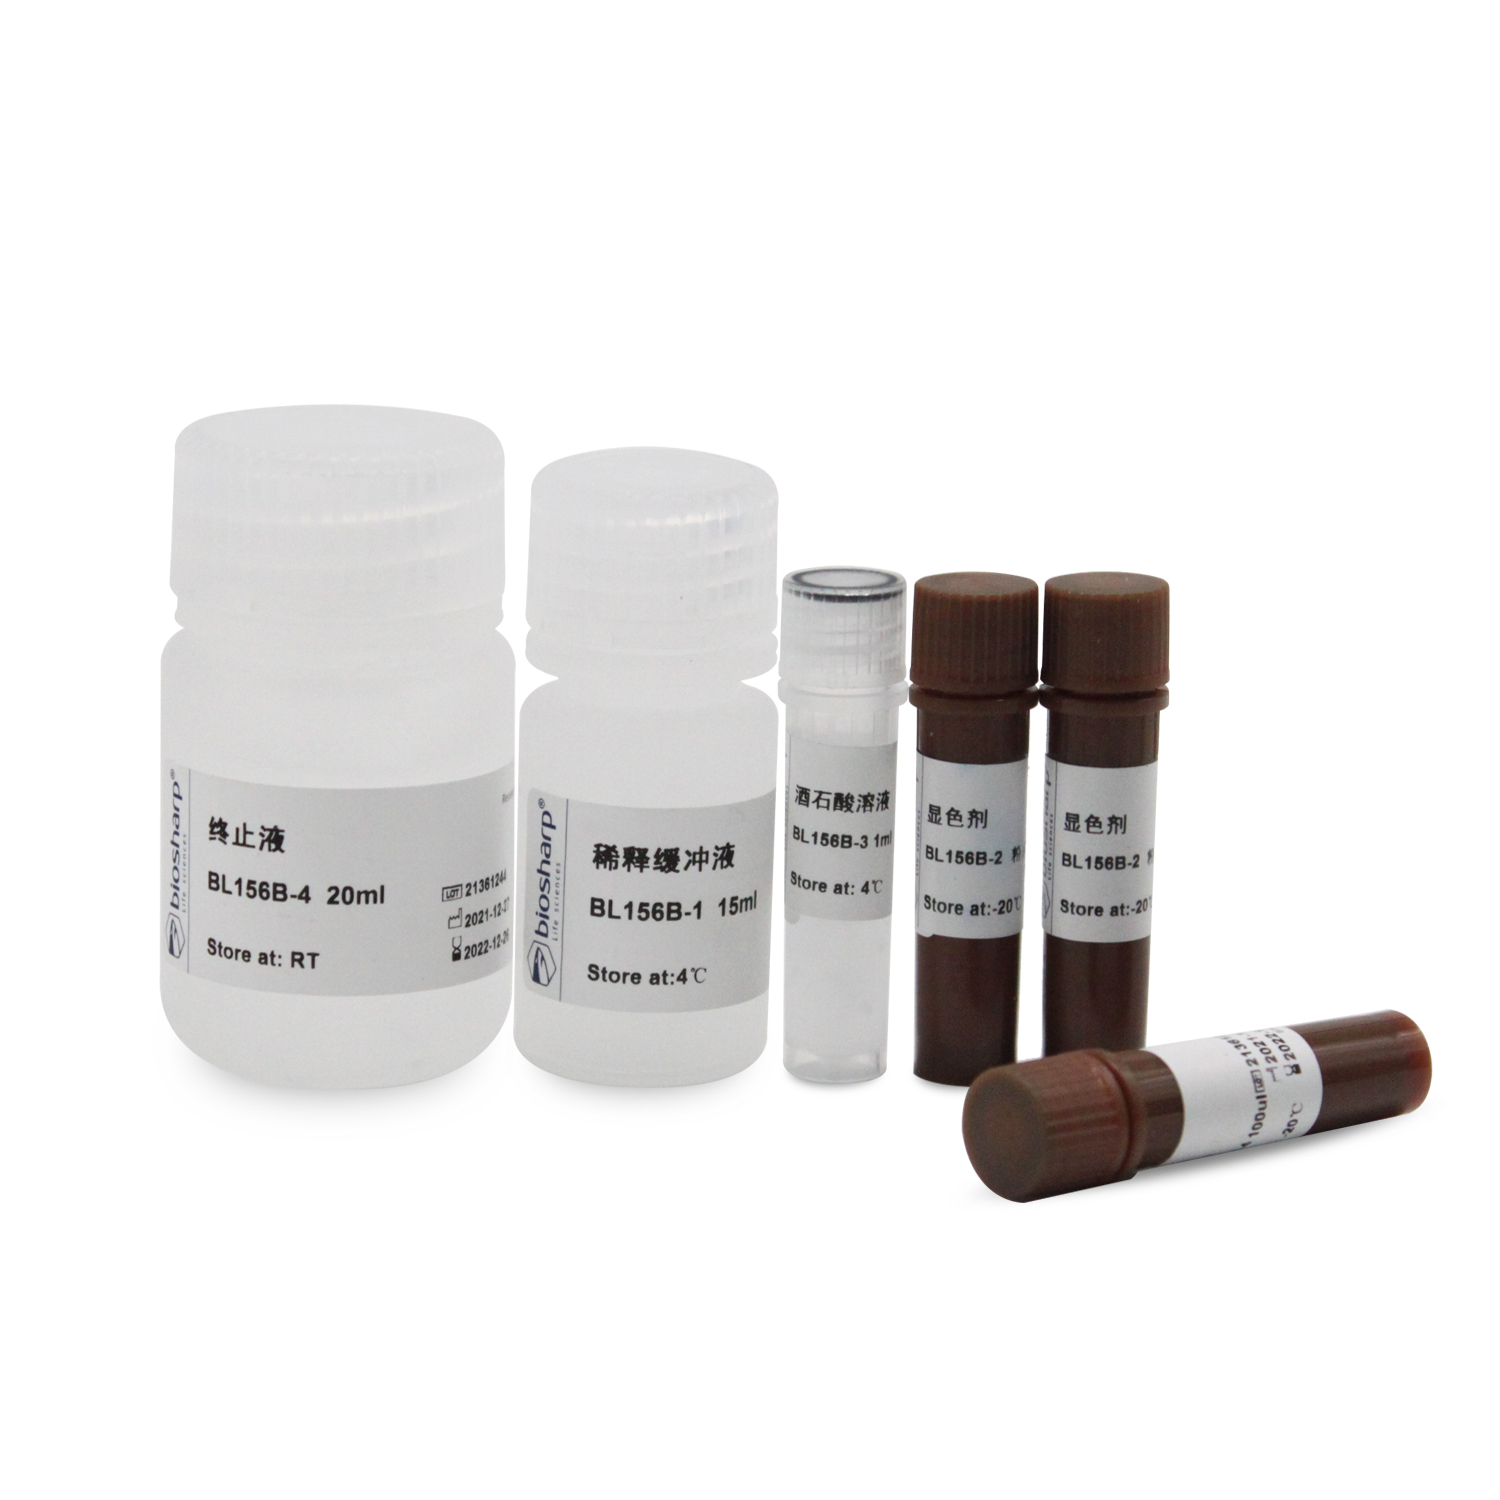 抗酒石酸酸性磷酸酶检测试剂盒(PNP微板法)